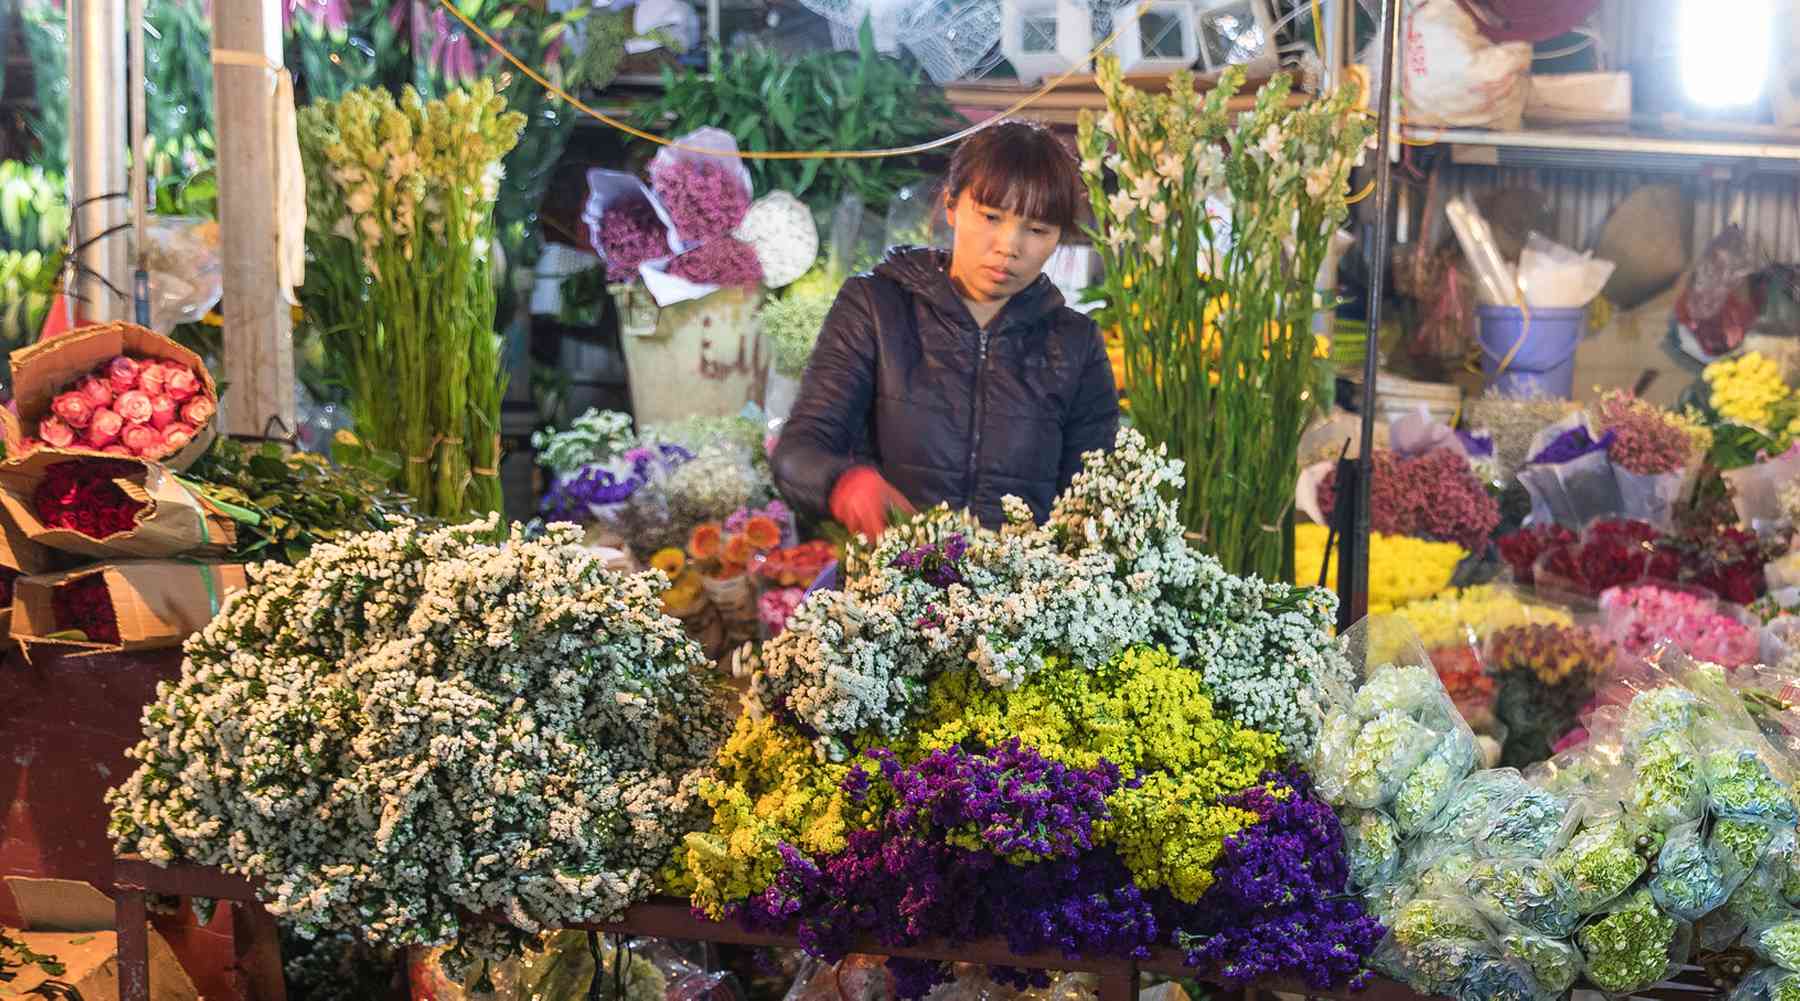 بازار کوانگ با برای خرید گل از ویتنام